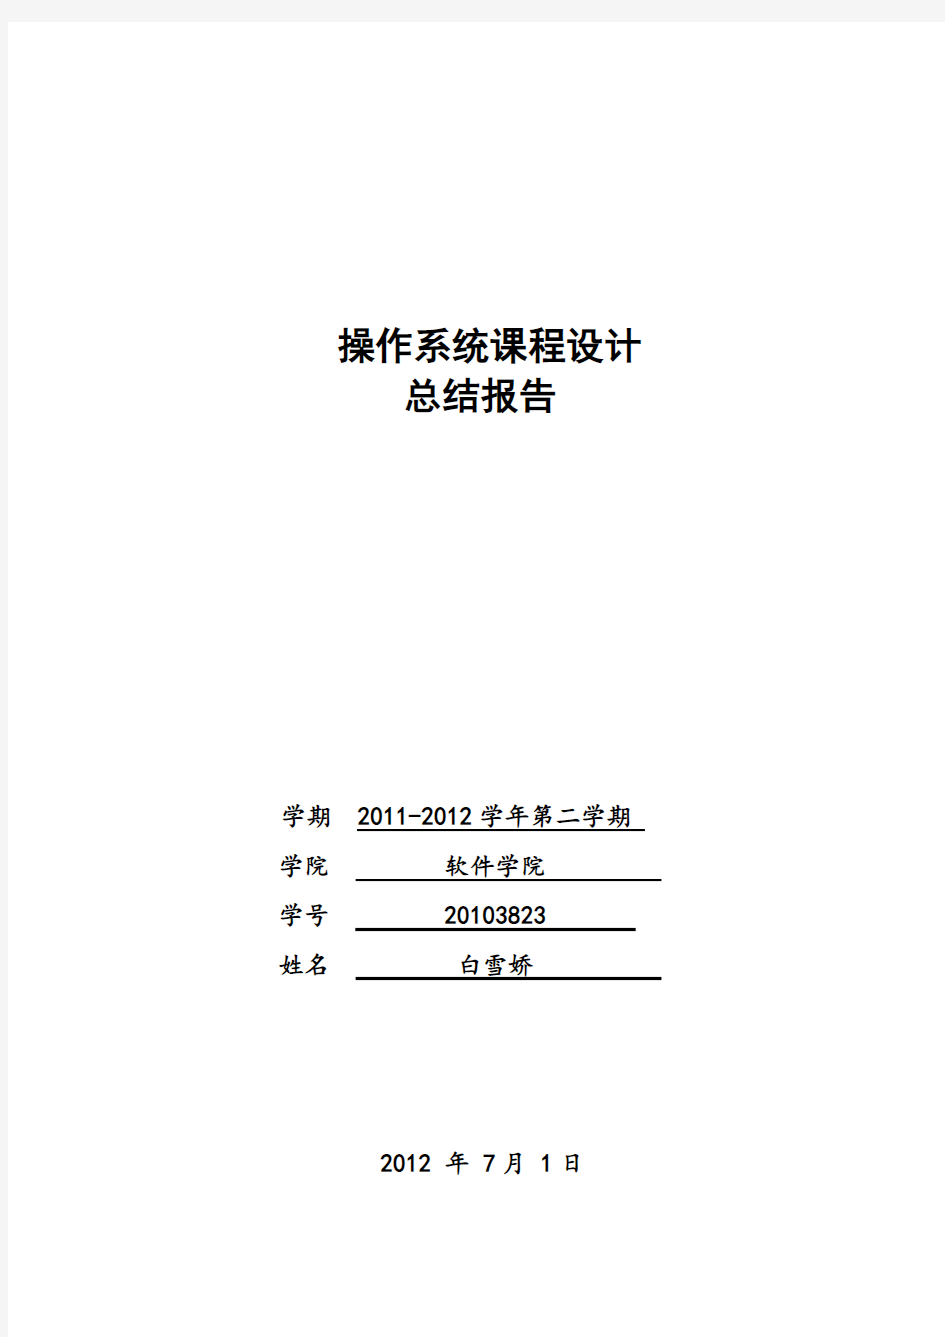 操作系统课程设计总结报告(白雪娇20103823)